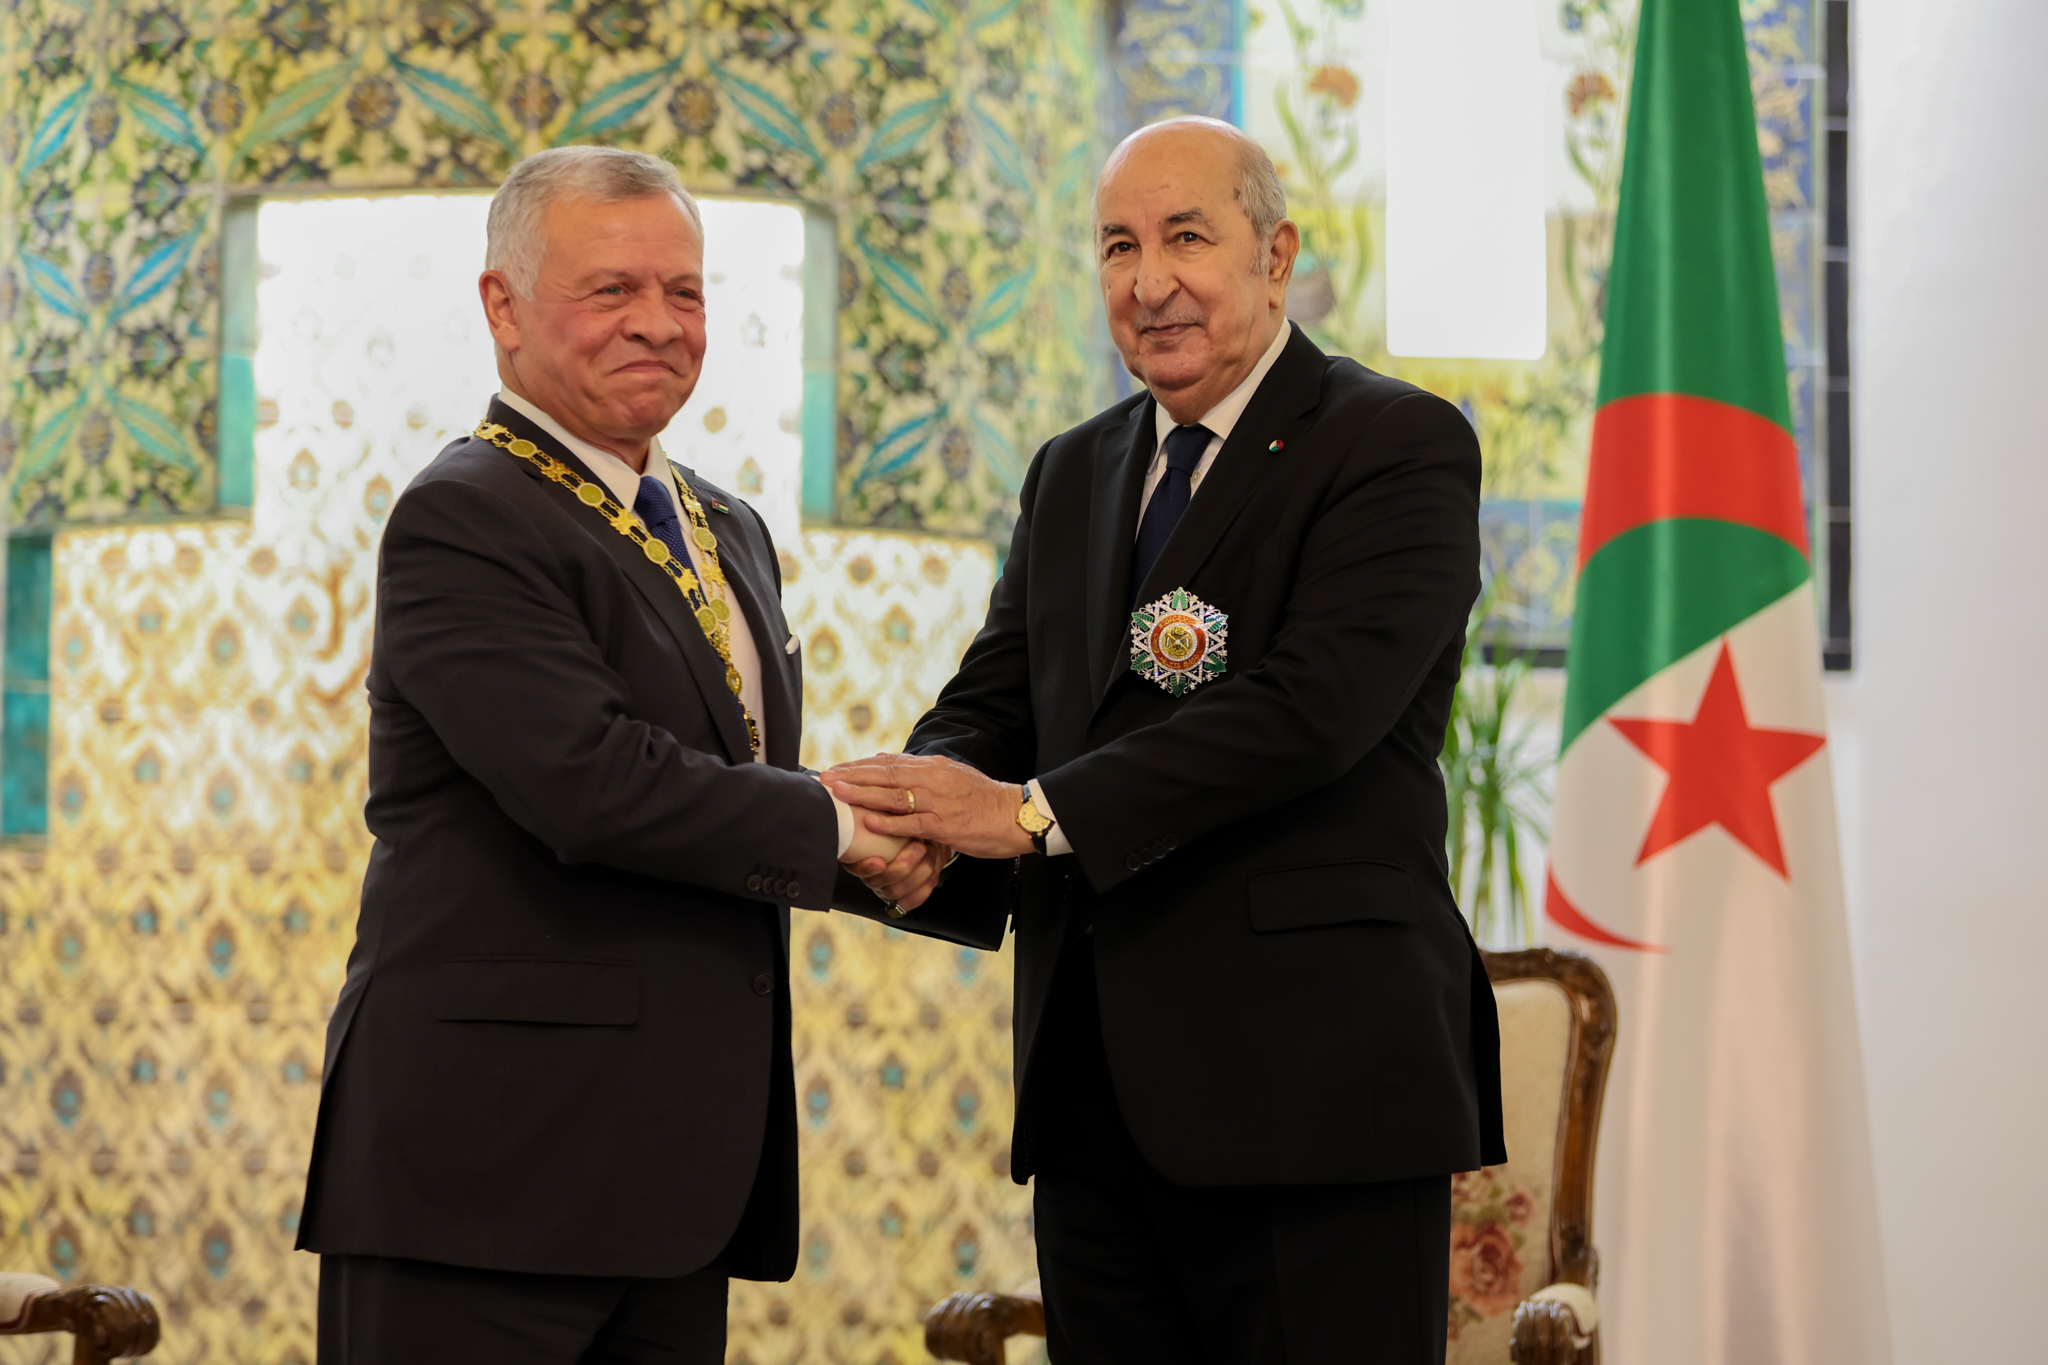 الملك والرئيس الجزائري يتبادلان وسامين رفيعين.. فيديو